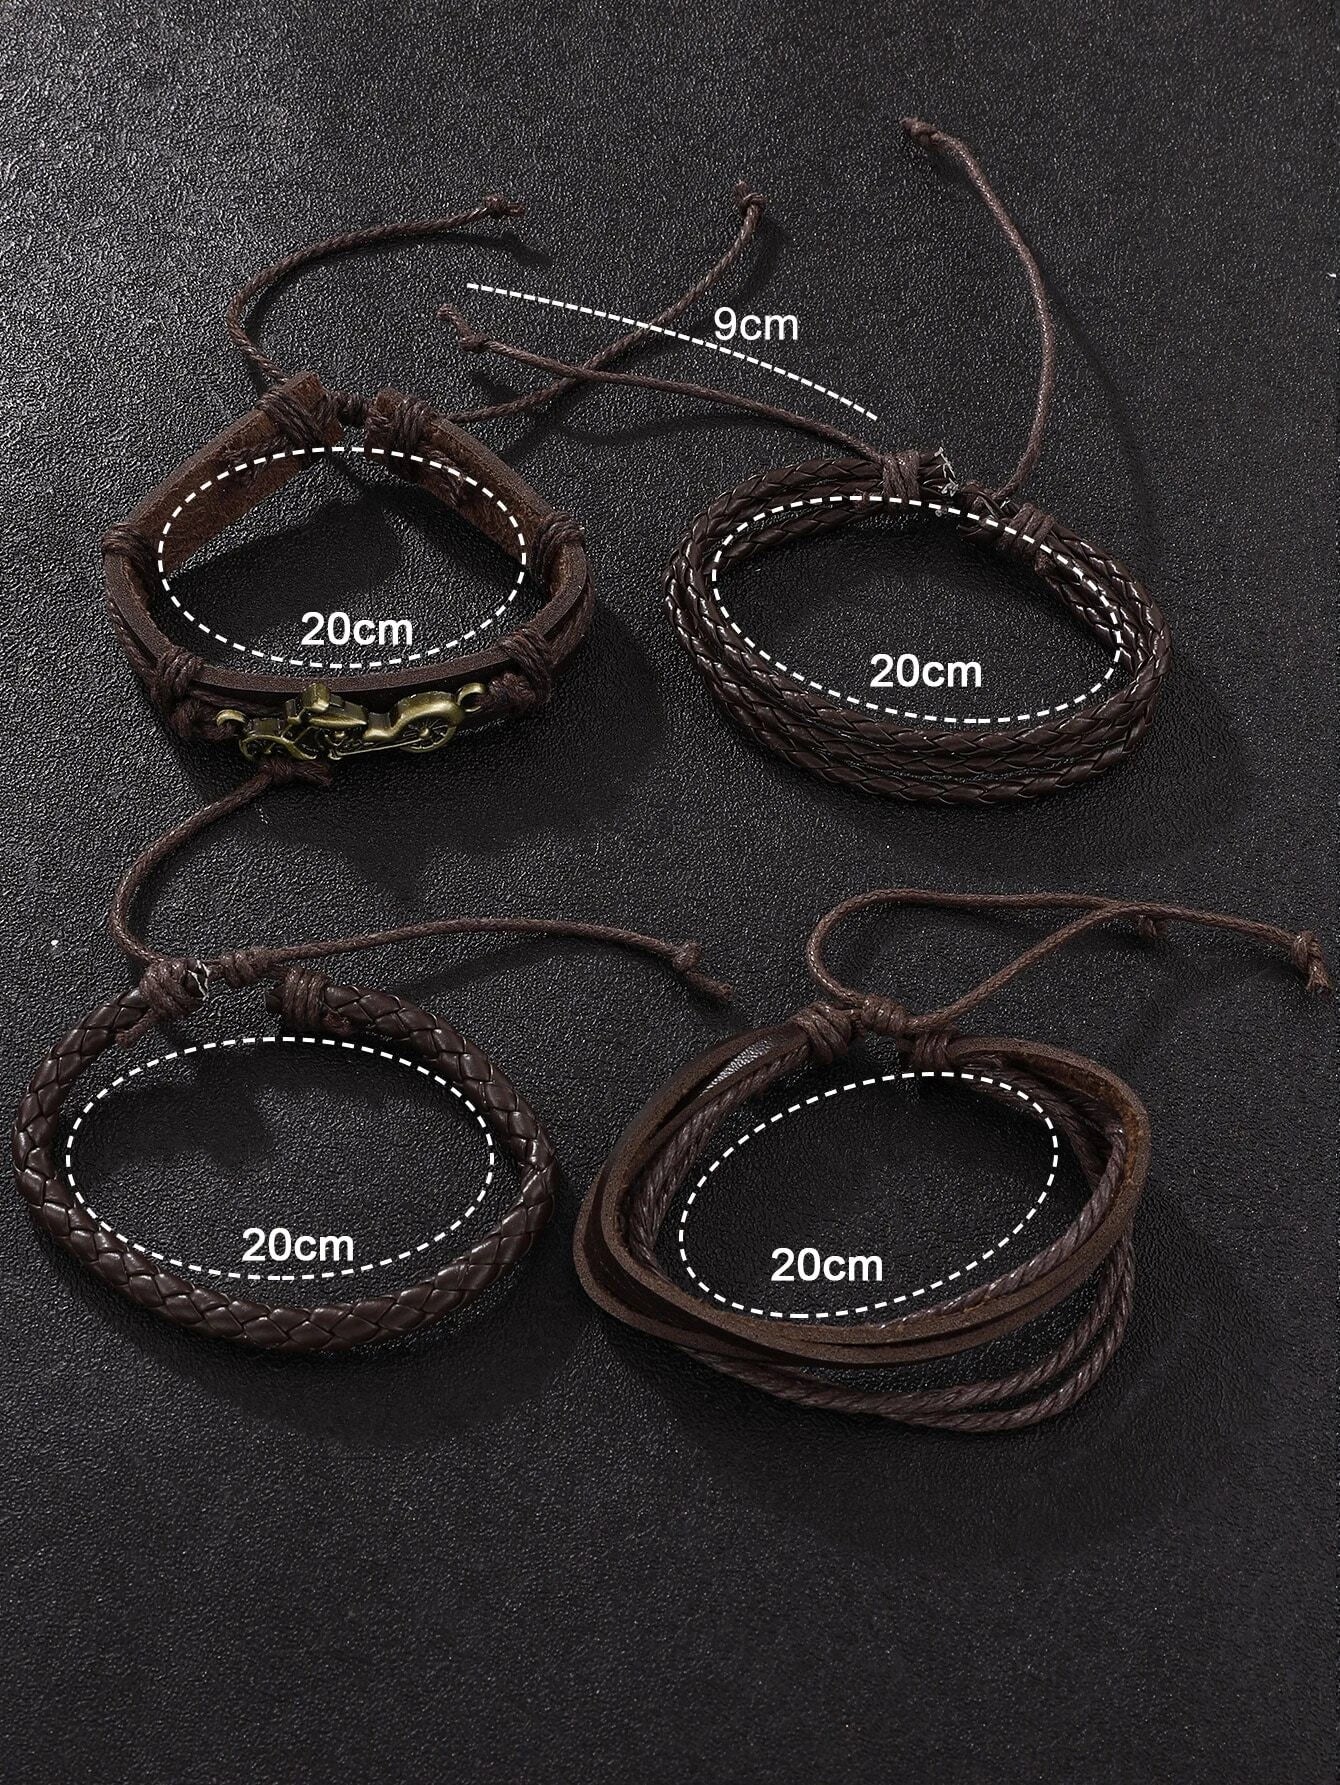 1pc Men Brown PU Polyurethane Strap Fashionable Round Dial Quartz Watch & 4pcs Bracelet, For Daily Decoration